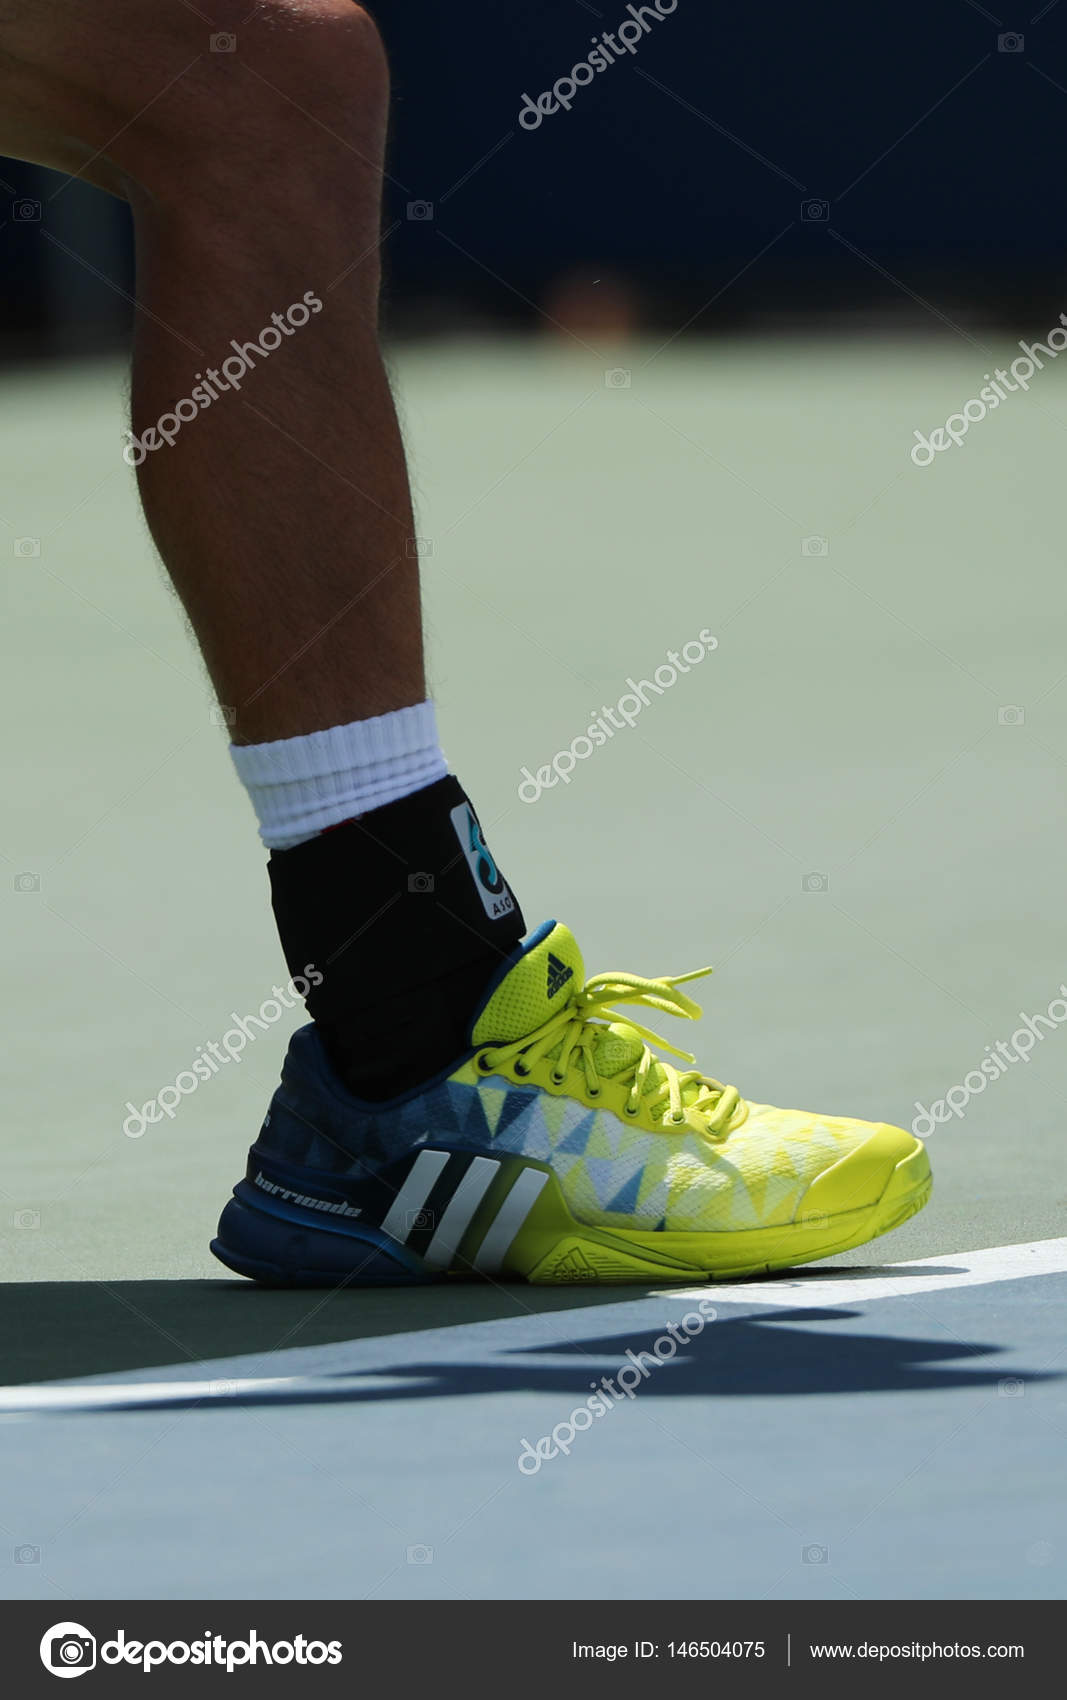 custom adidas tennis shoes